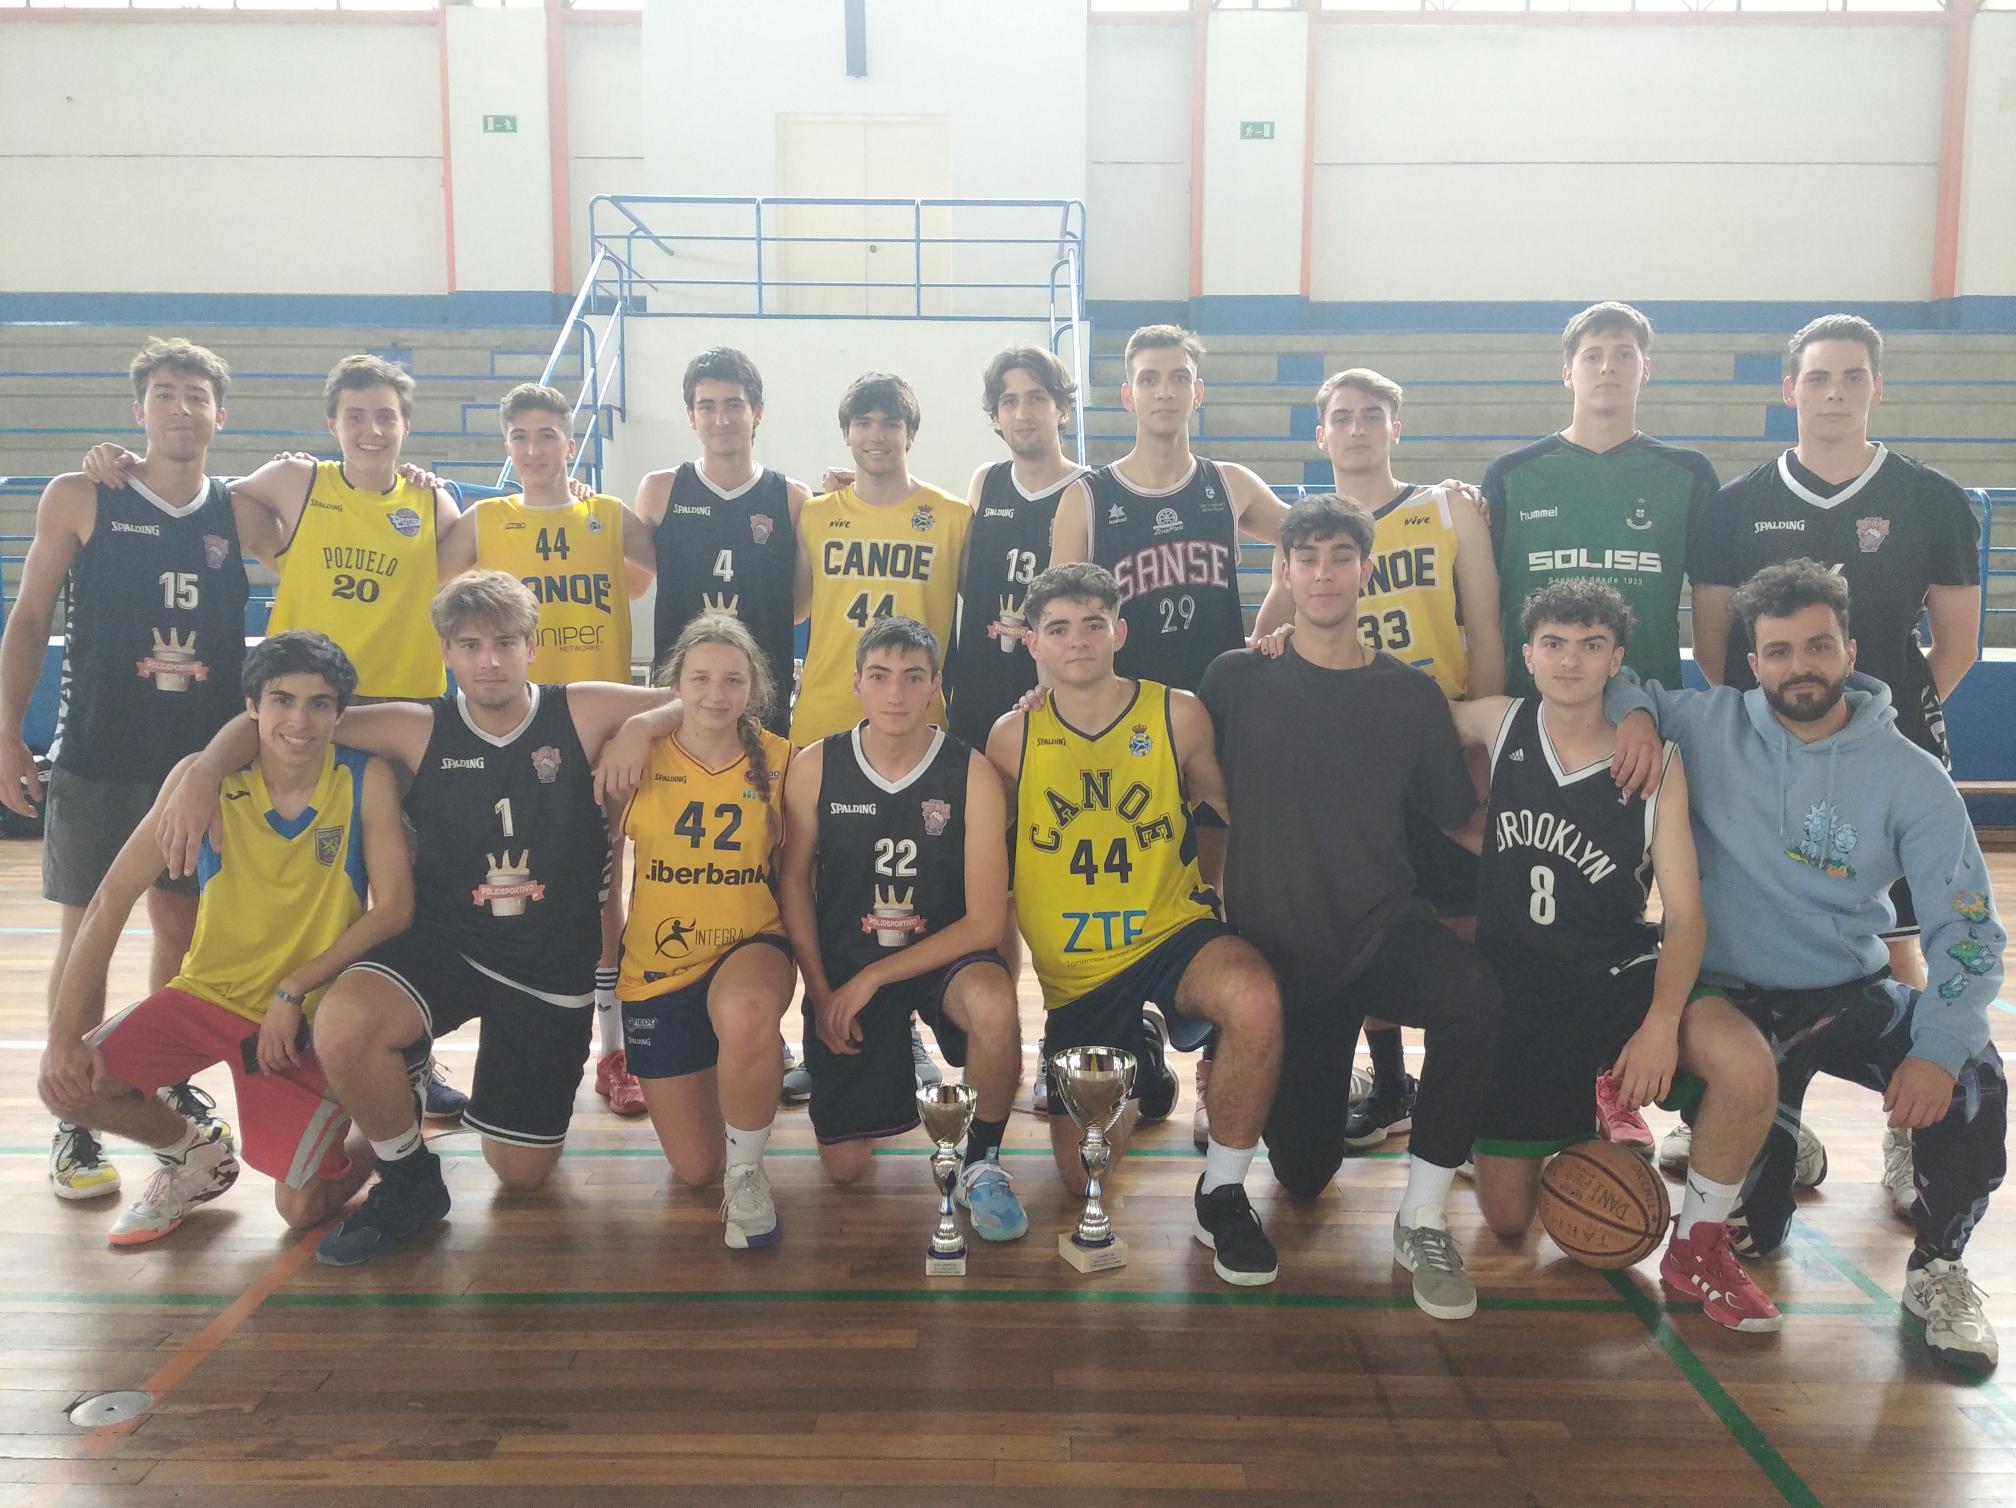 Finalistas Torneo de Primavera Baloncesto 2022. Equipos Señores Letrados (amarillo) y Drink Team (negros)